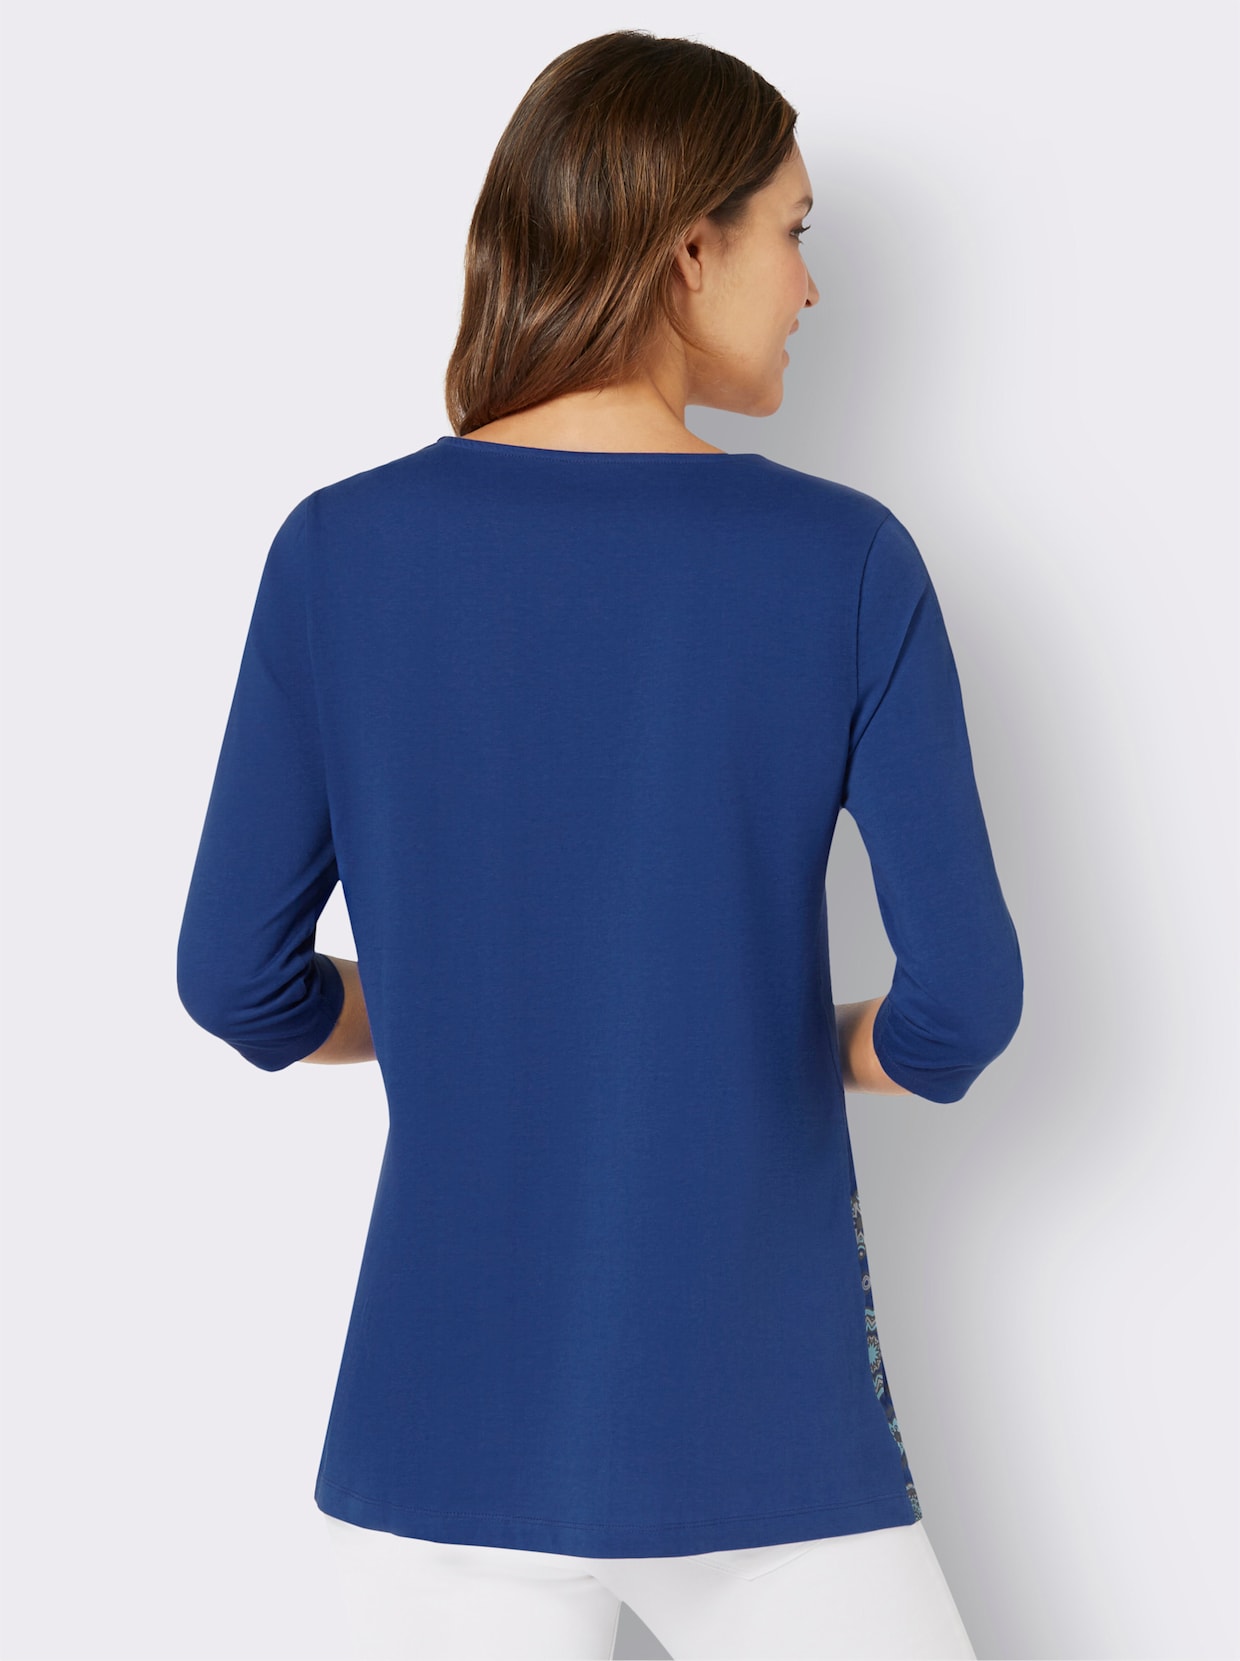 Dlouhé tričko - královská modrá-aqua